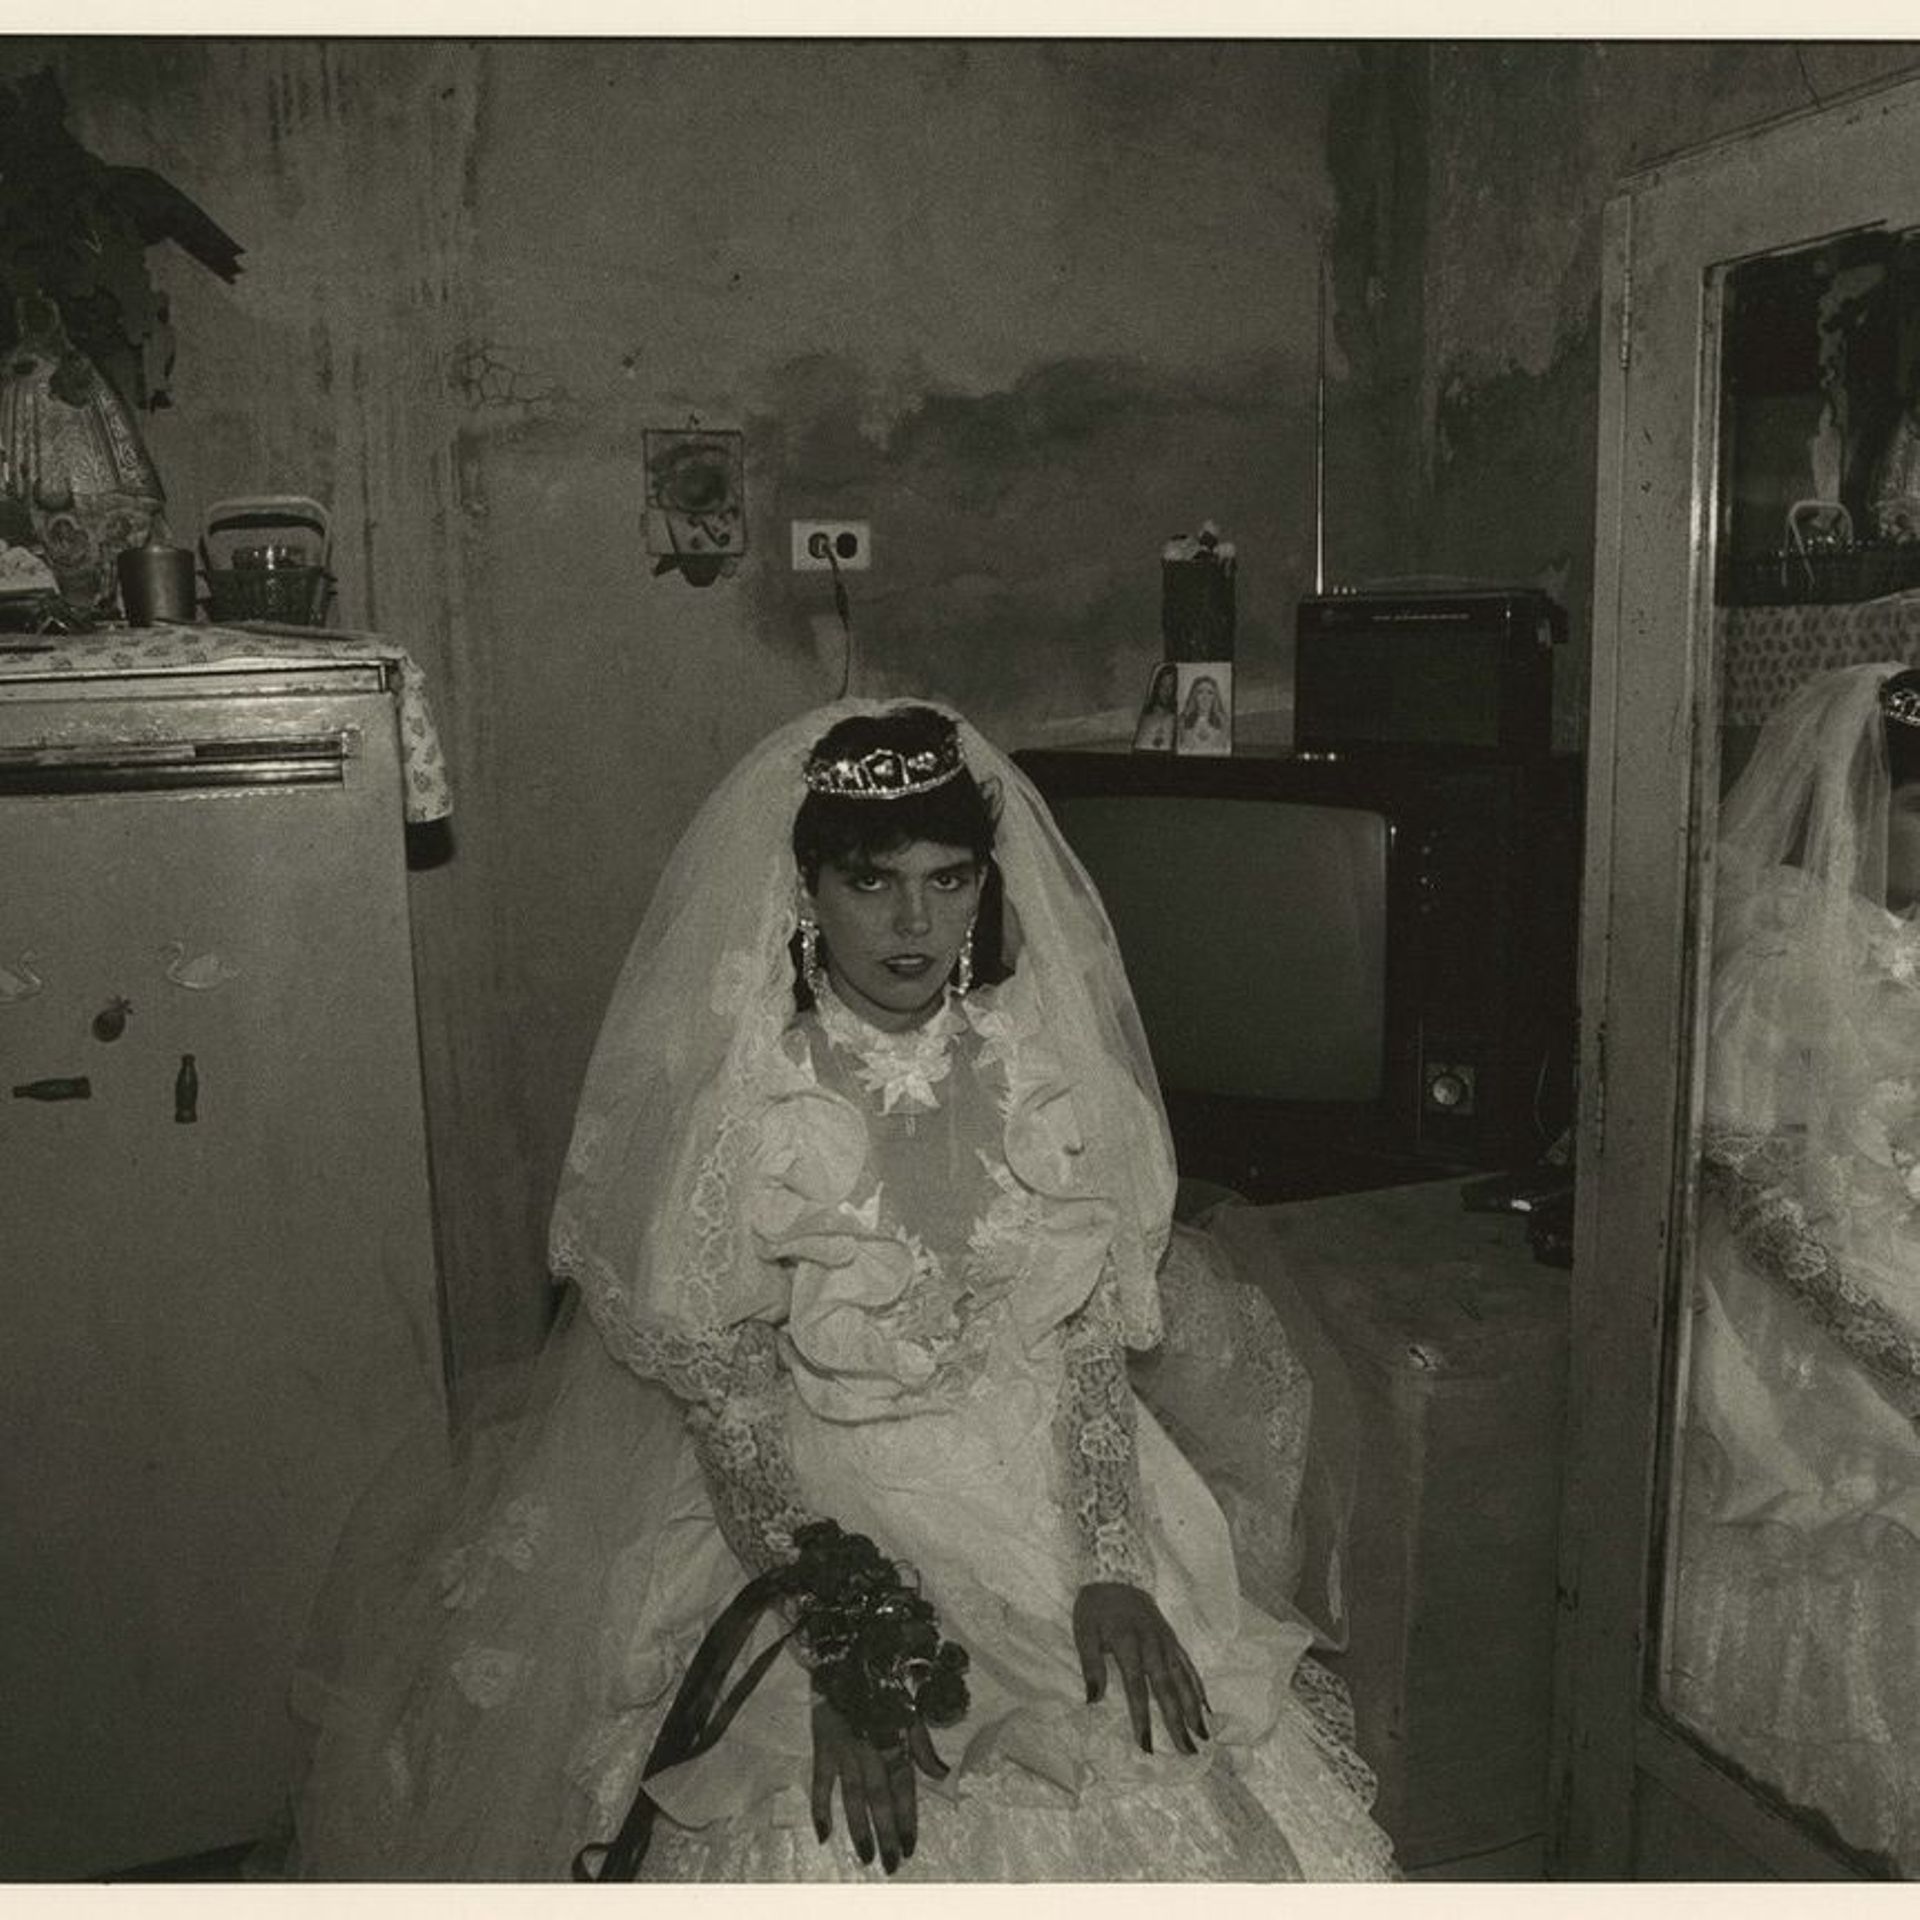 Portrait d'une future mariée à La Havane - Kattia García Fayat
La boda, La Habana, 1988-1989

